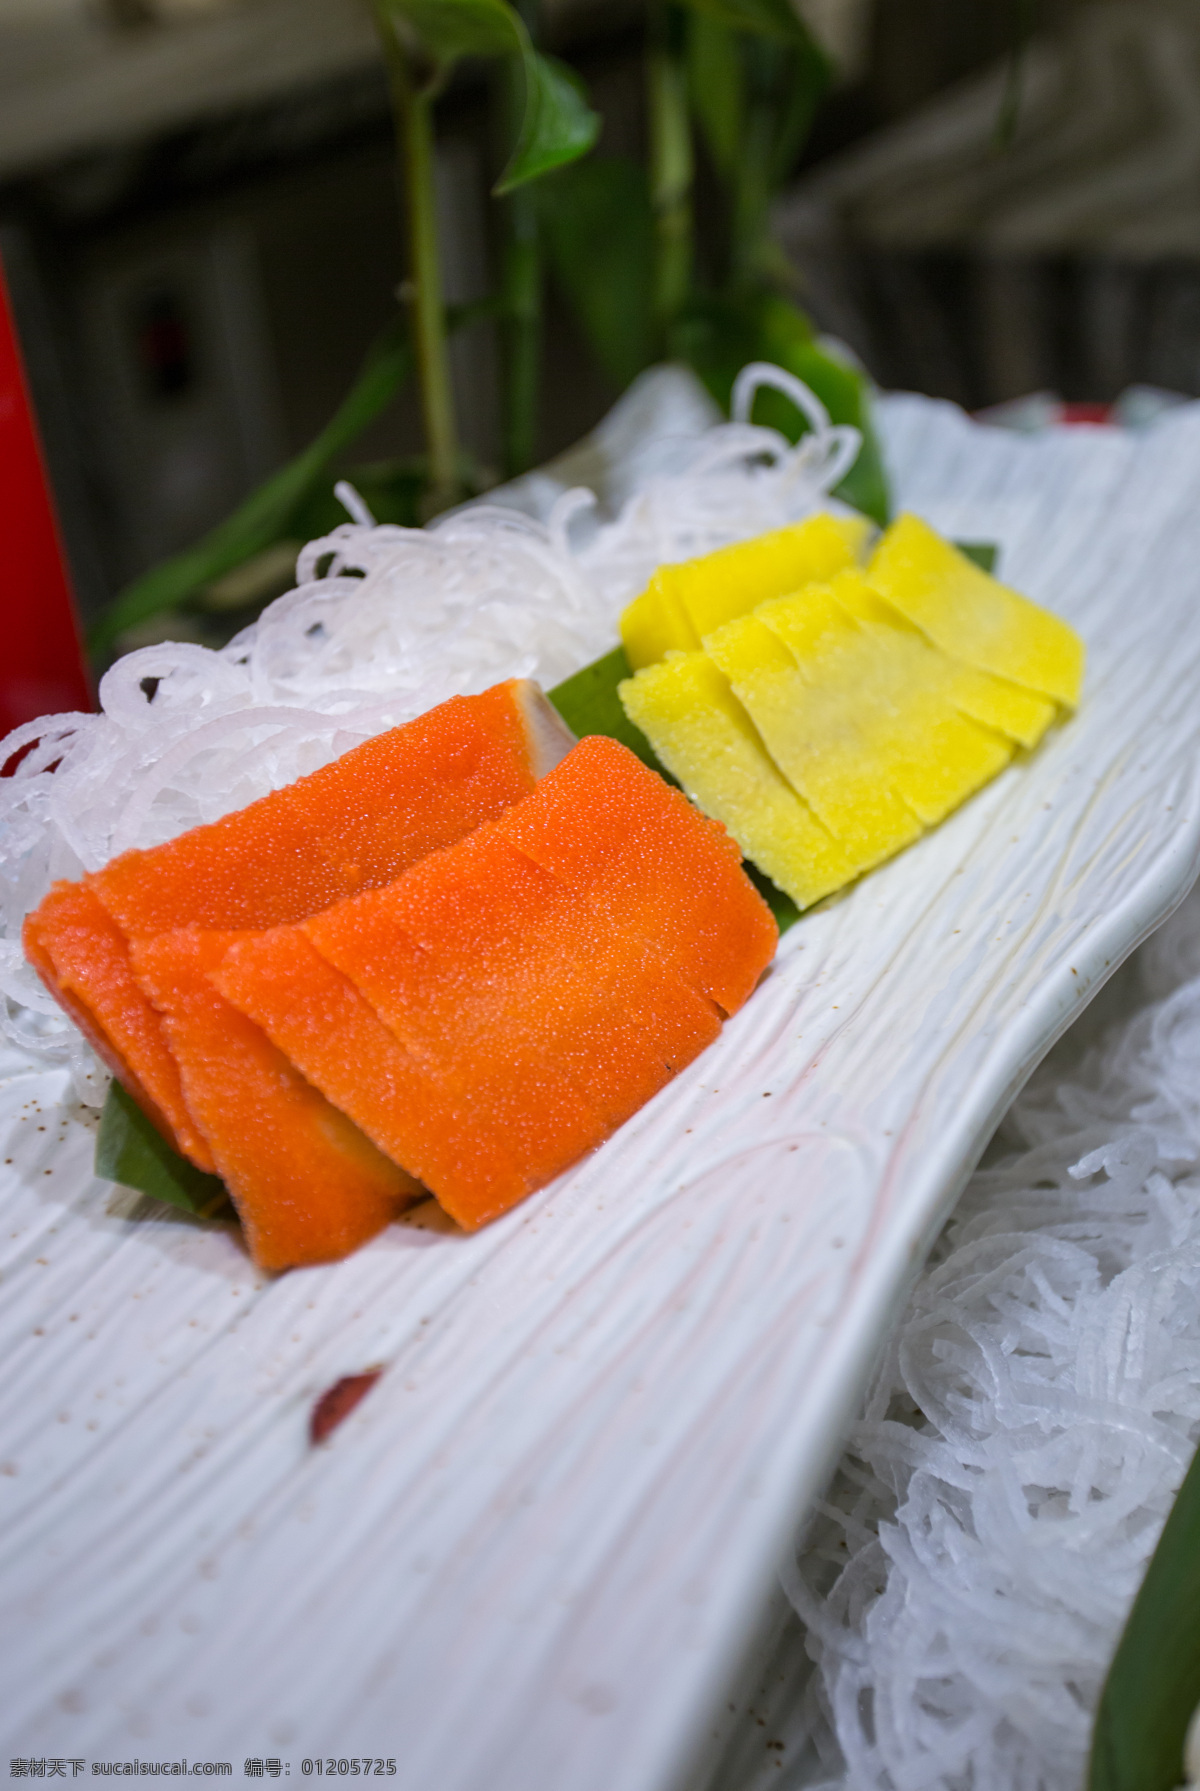 刺身 希鲮鱼 希零鱼 生鱼片 生鱼 鱼片 生鲜 海鲜 日本料理 西餐自助美食 餐饮美食 西餐美食